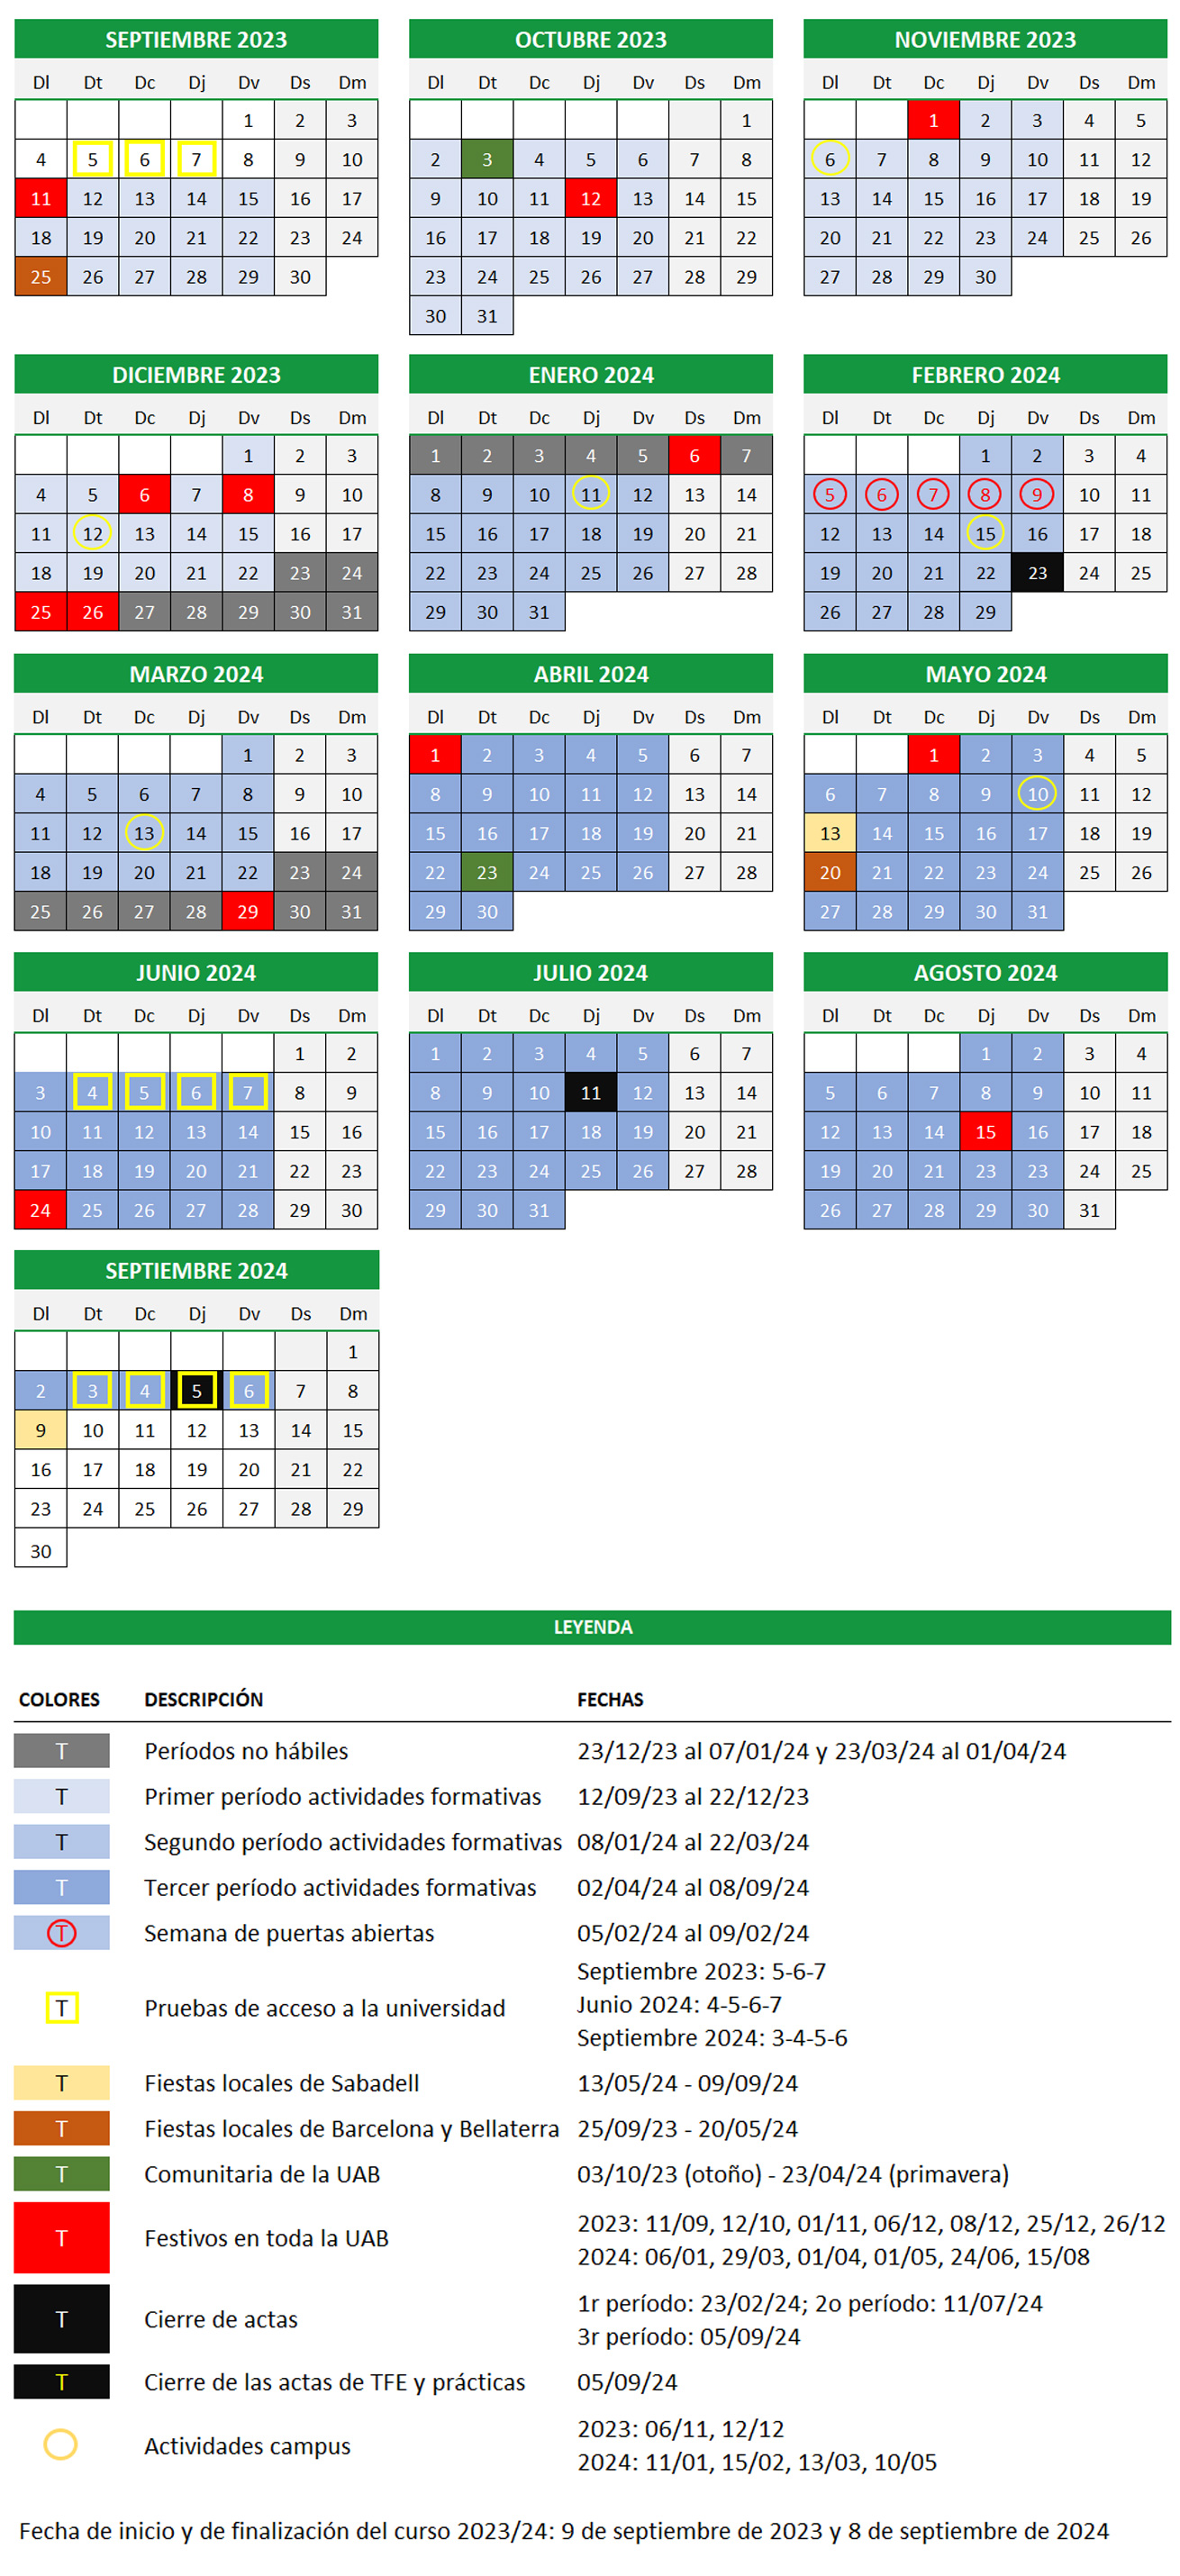 Calendario Académico 2023-2024